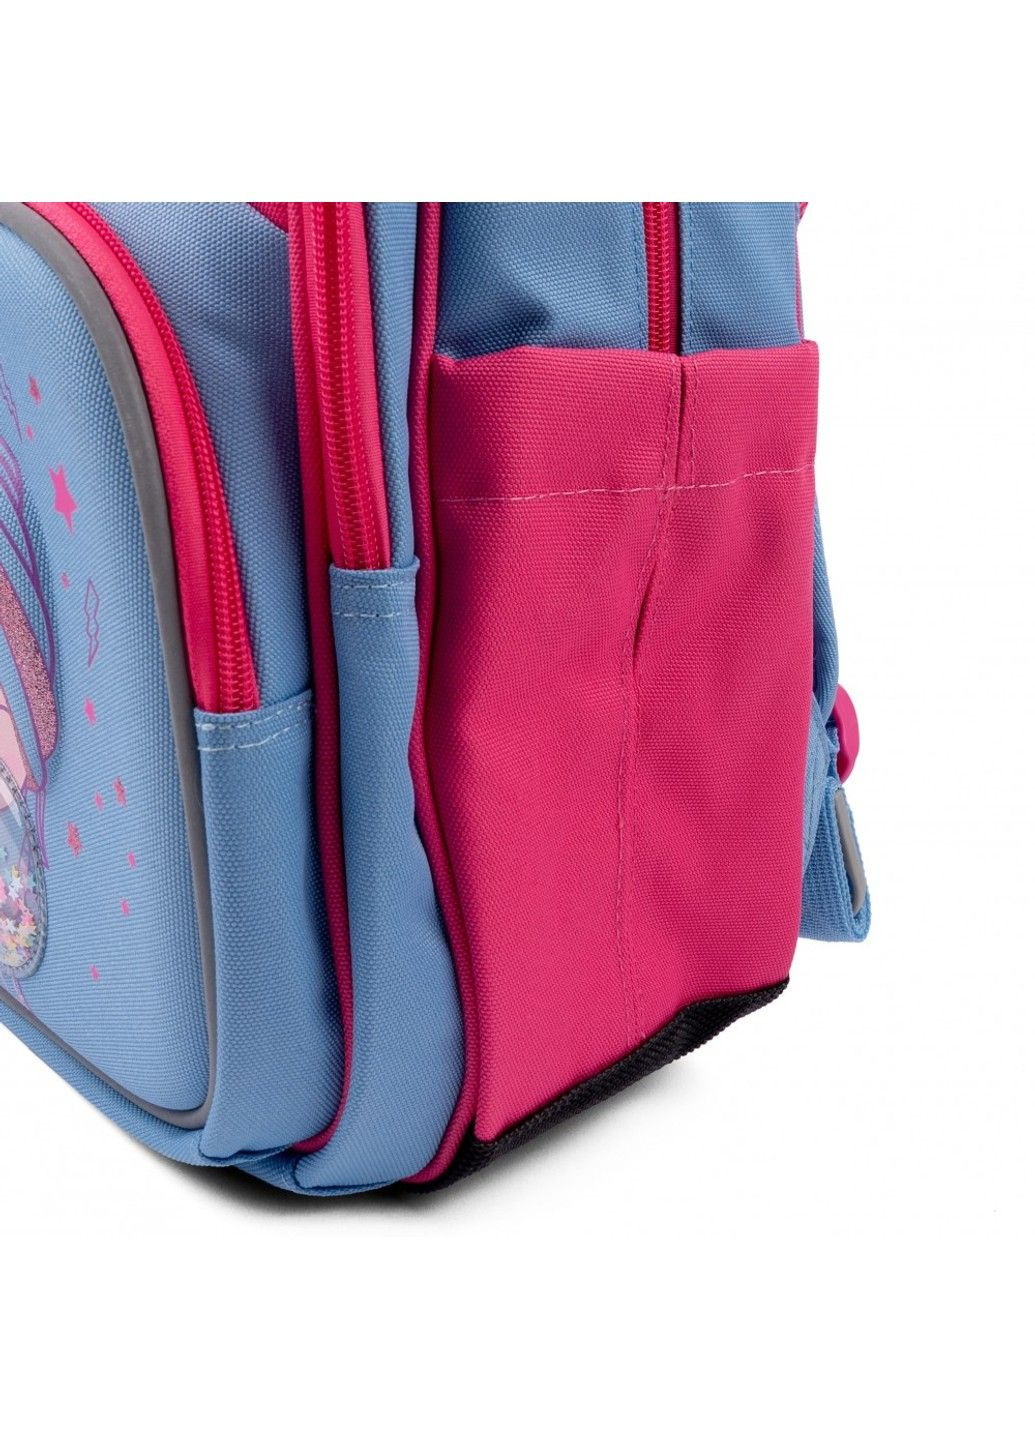 Шкільний рюкзак для молодших класів S-91 Girls style Yes (278404519)